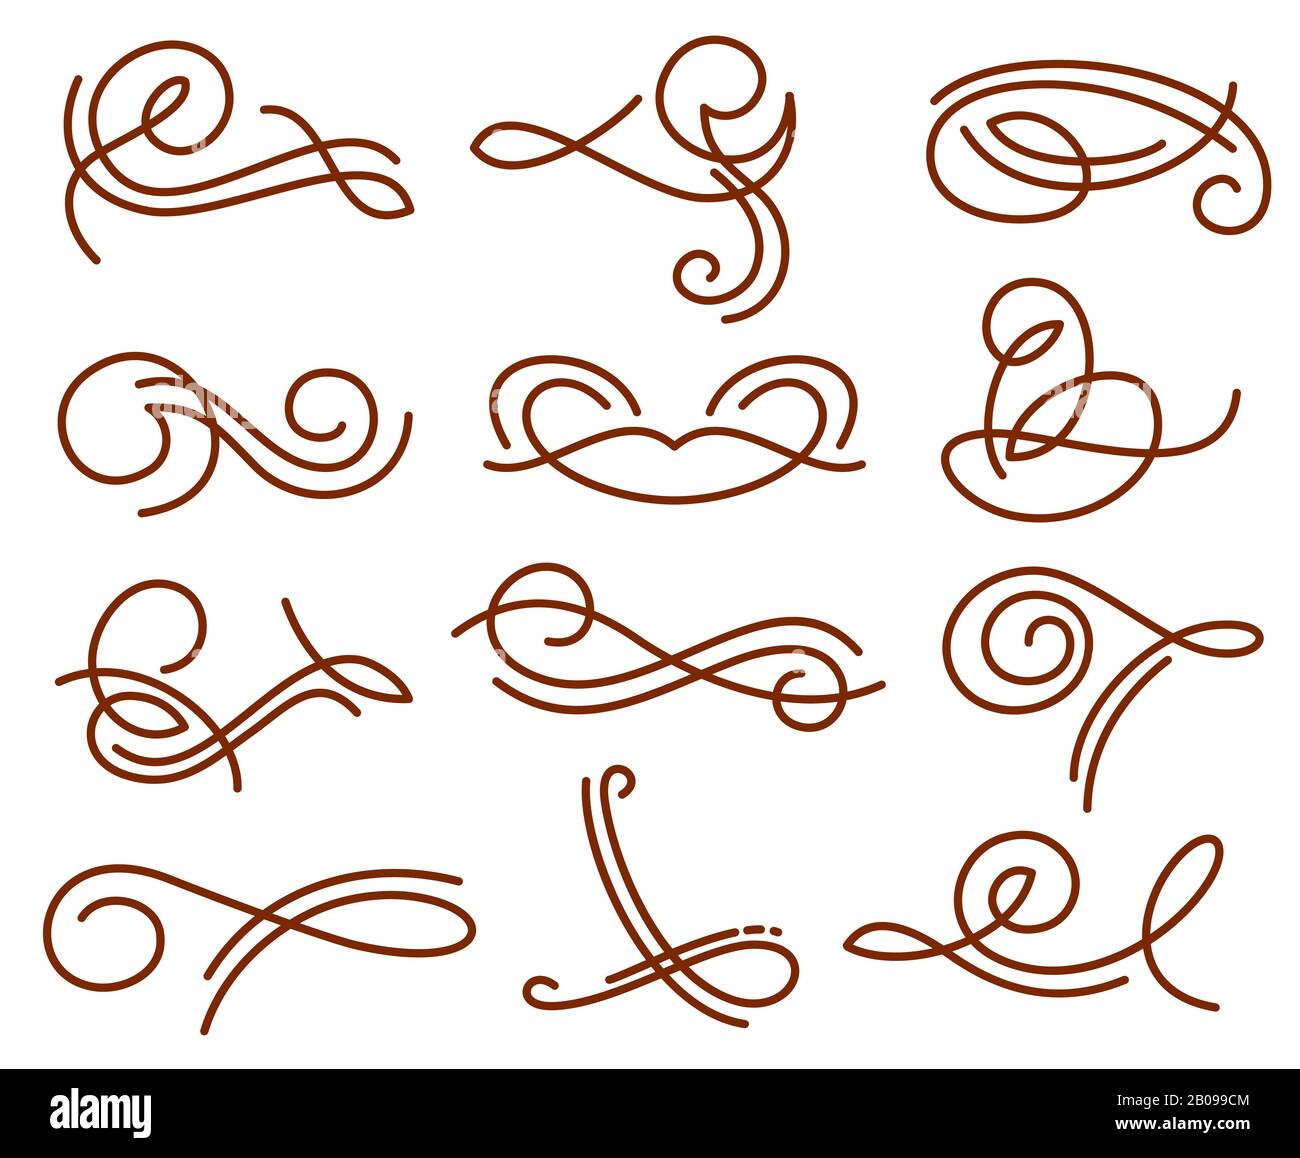 Flourish swirls, vintage calligraphy vector elements. Swirl flourish tattoo henna, abstract swirl line illustration Stock Vector